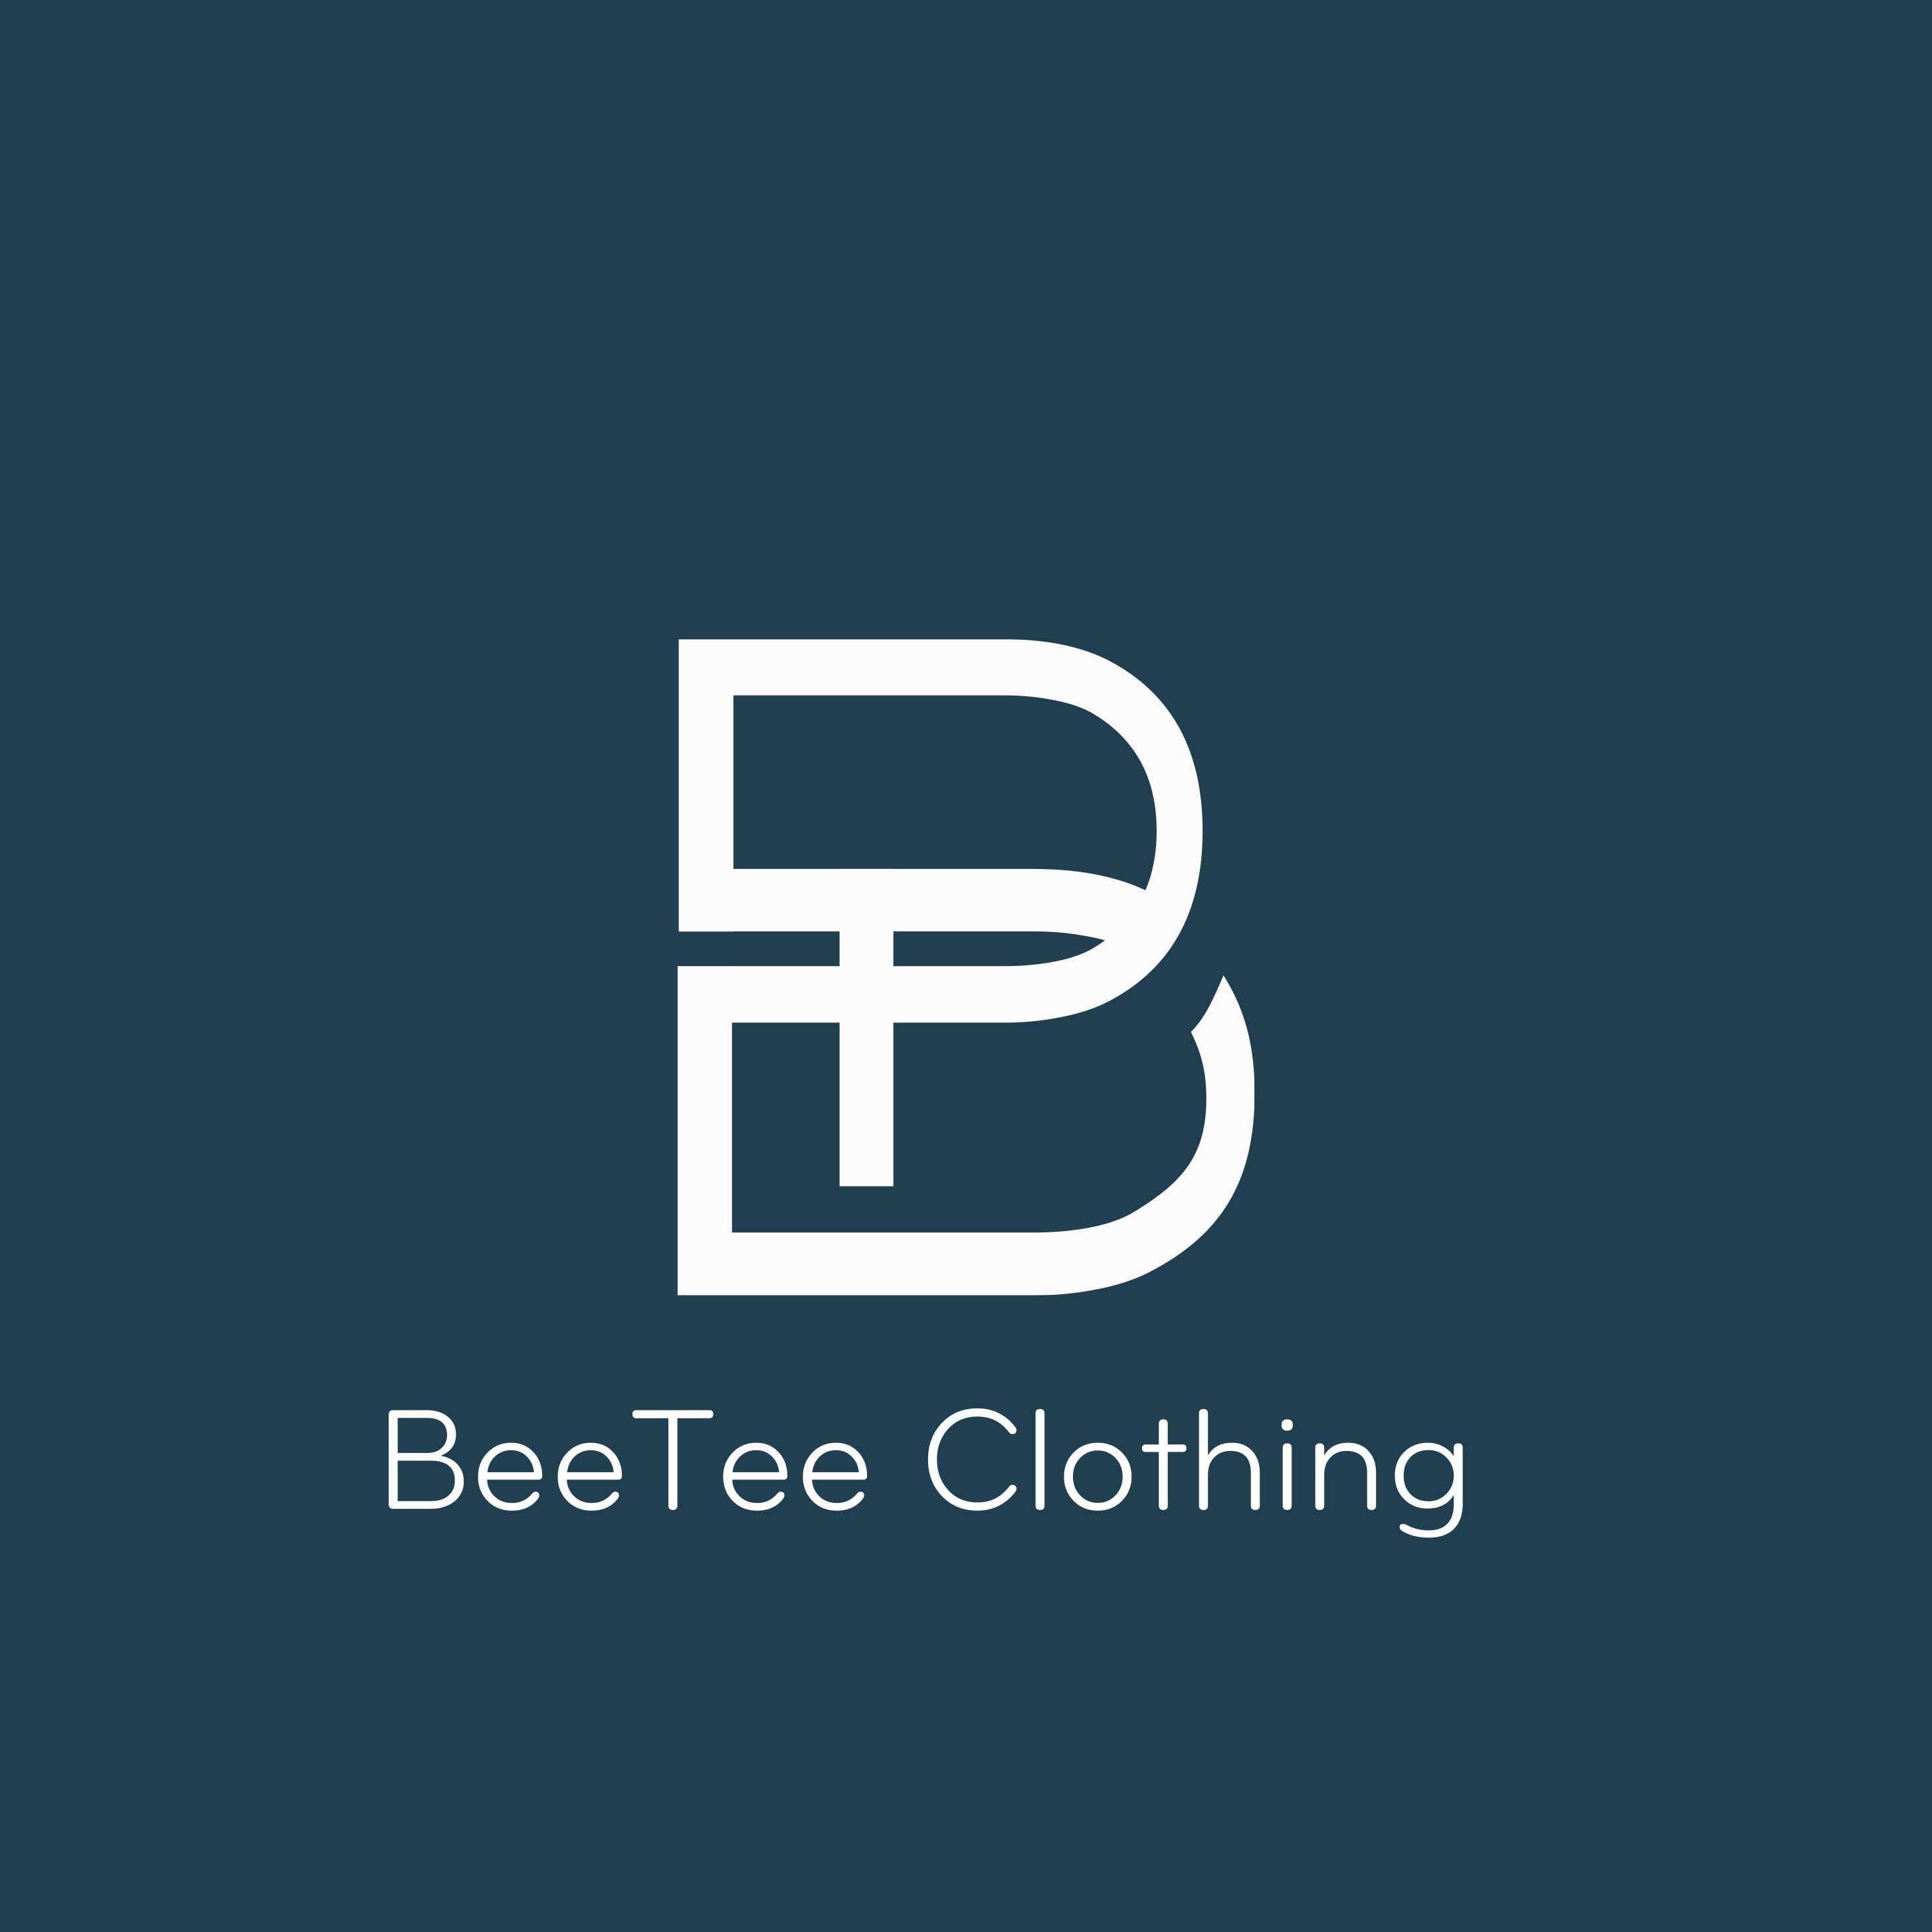 BeeteeClothing